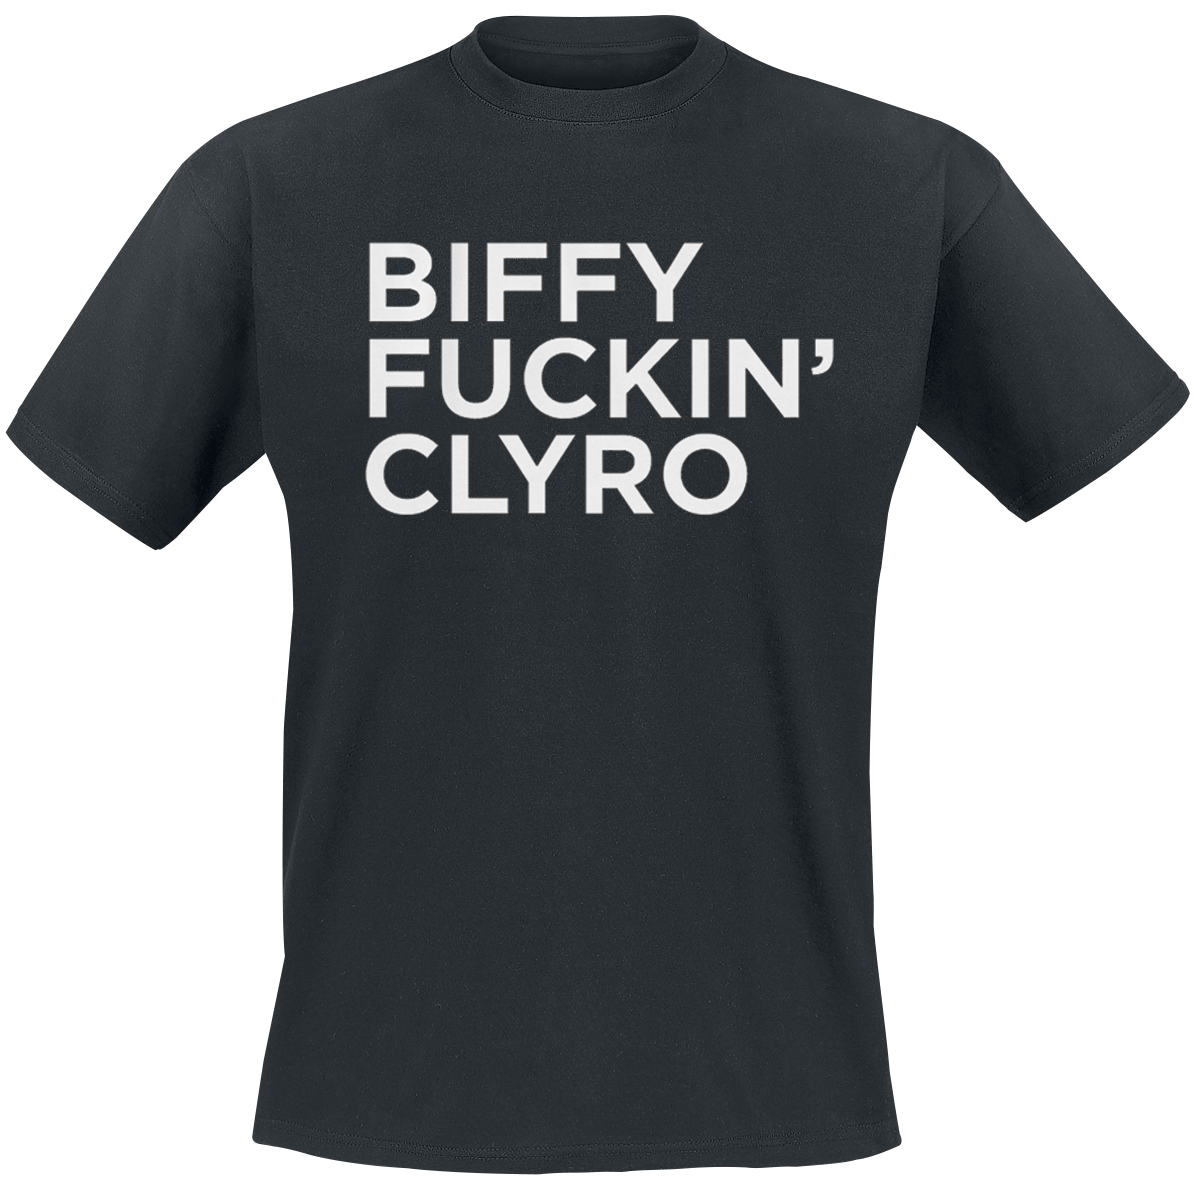 Biffy Clyro - Biffy Fuckin' Clyro - T-Shirt - black image